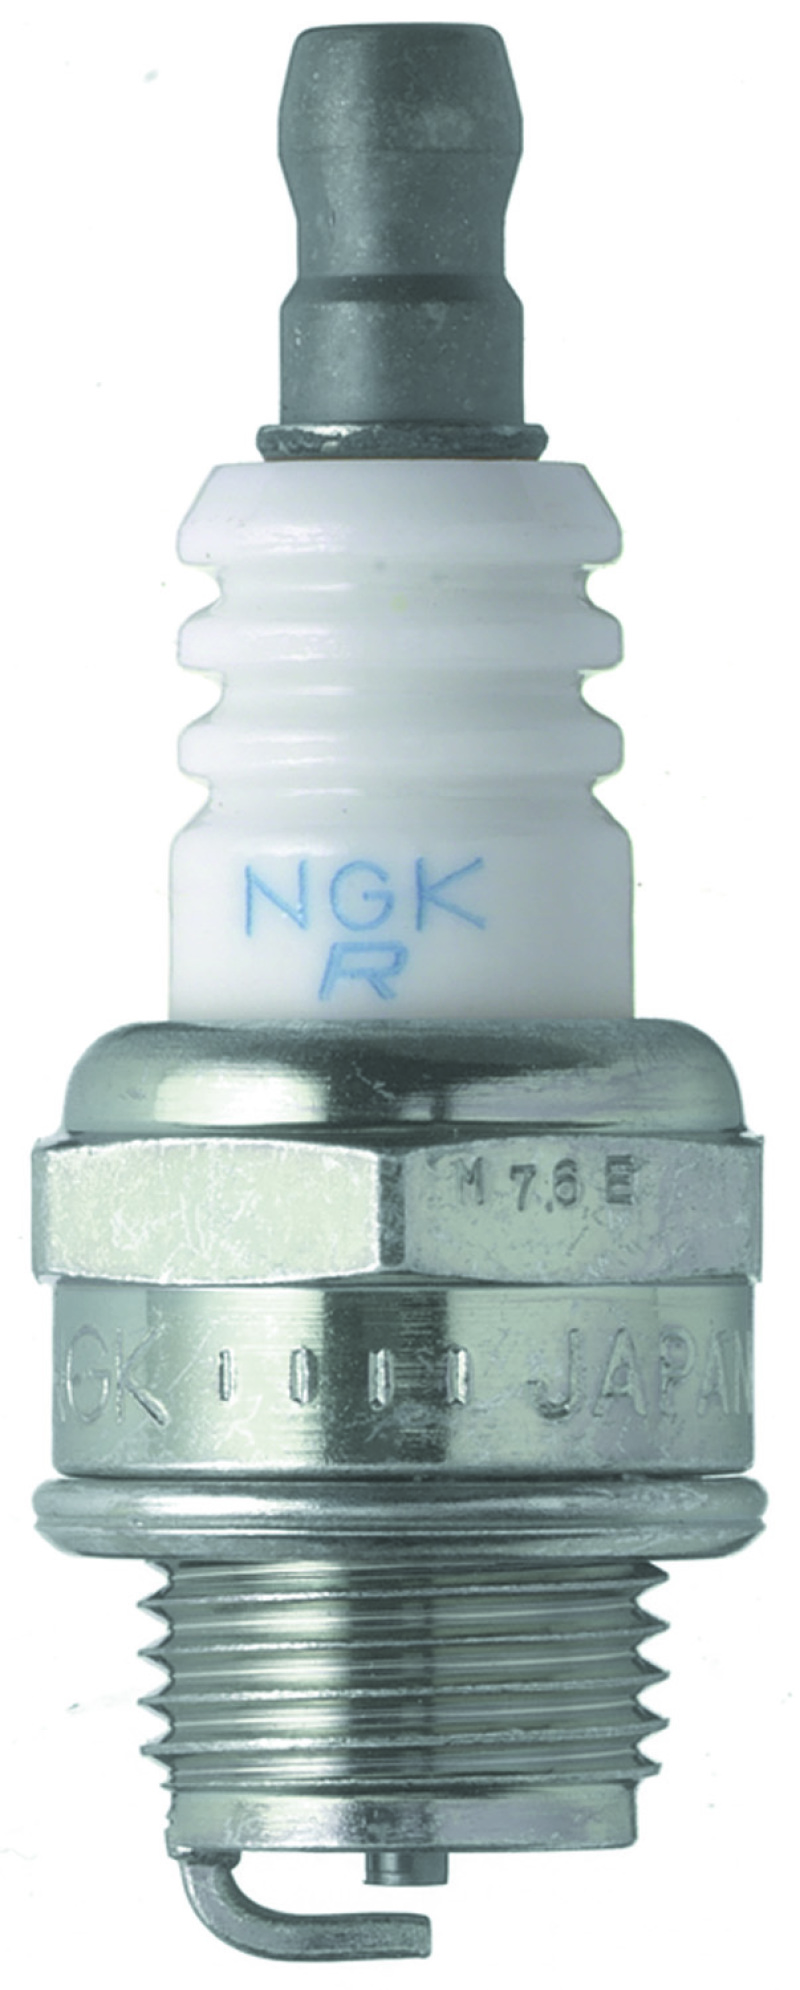 NGK Standard Spark Plug Box of 10 (BMR6A SOLID) - 4002